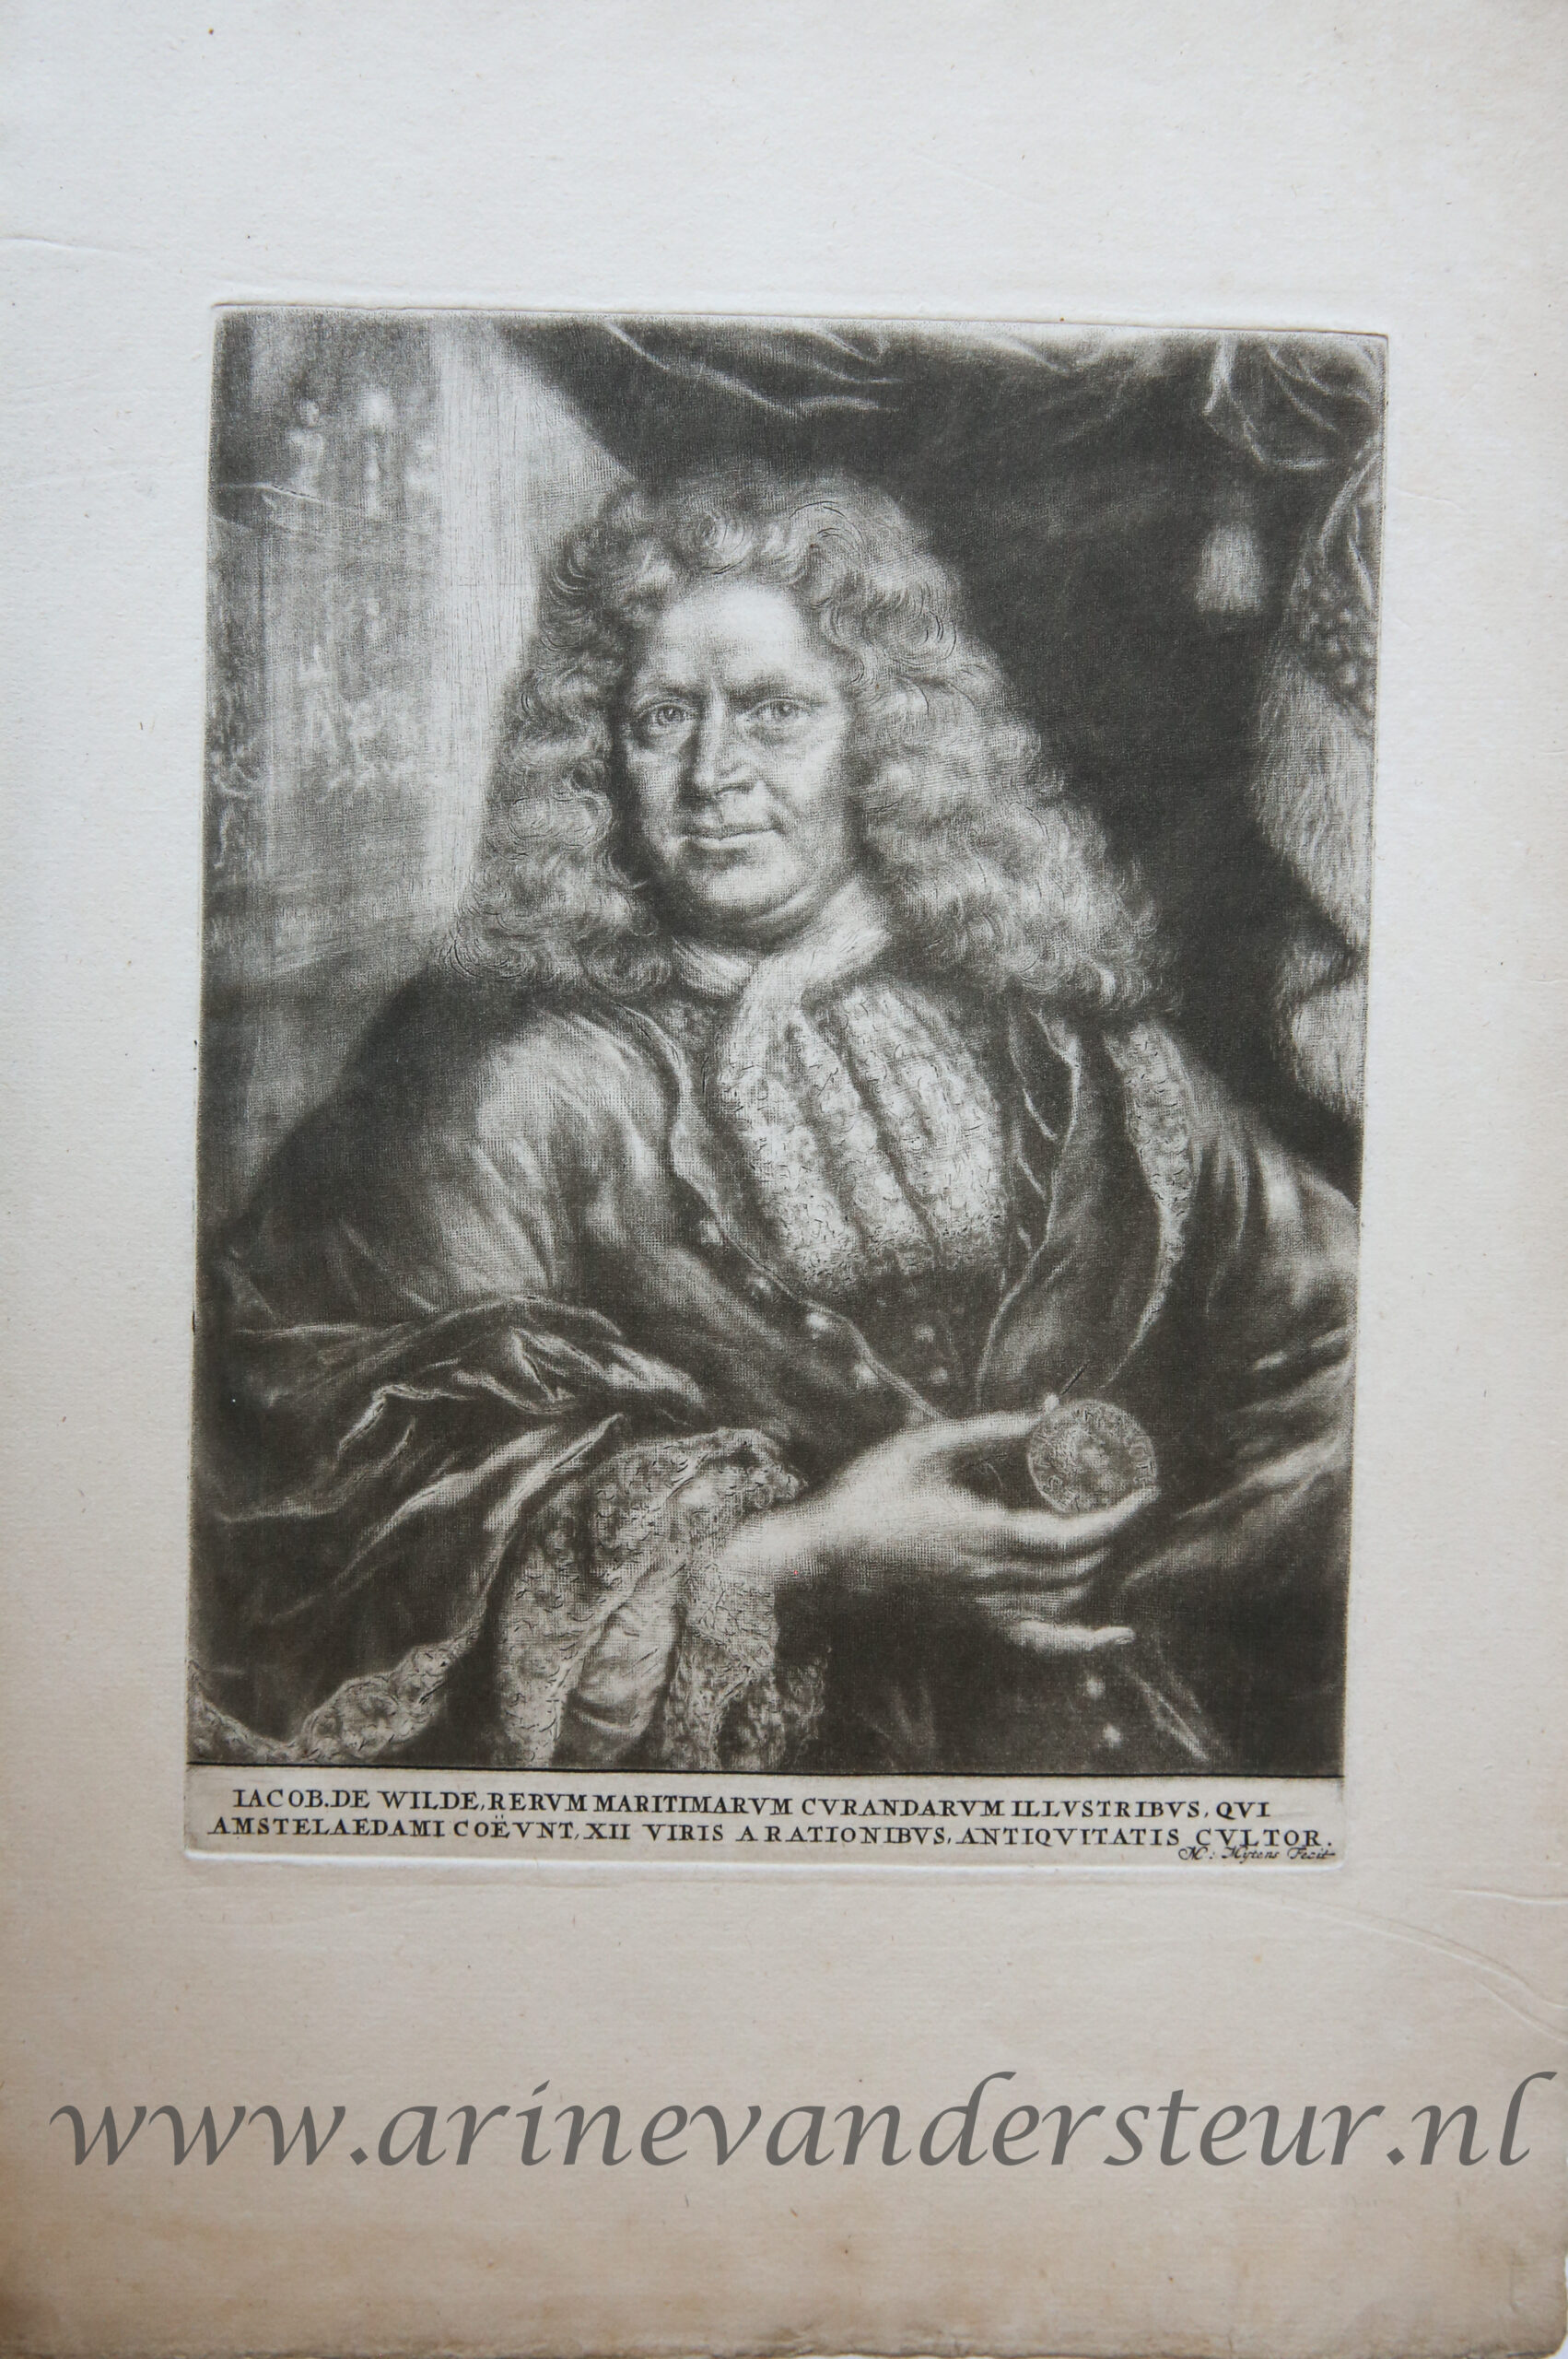 [Antique portrait print, mezzotint] Portrait of Jacob de Wilde, published ca. 1700.